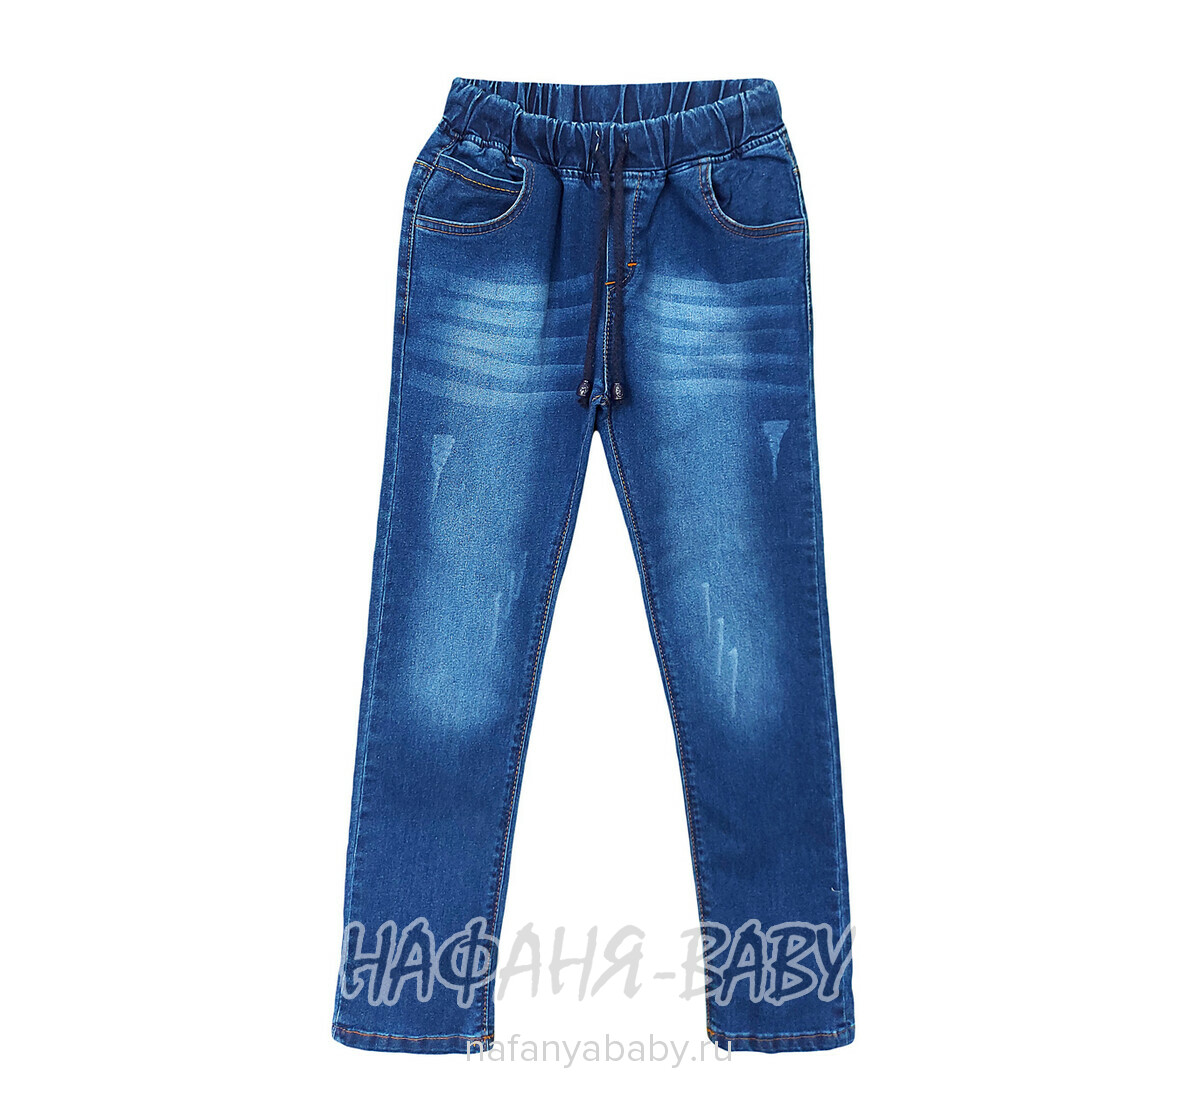 Подростковые джинсы TATI Jeans для мальчика арт: 7489, 9-12 лет, оптом Турция